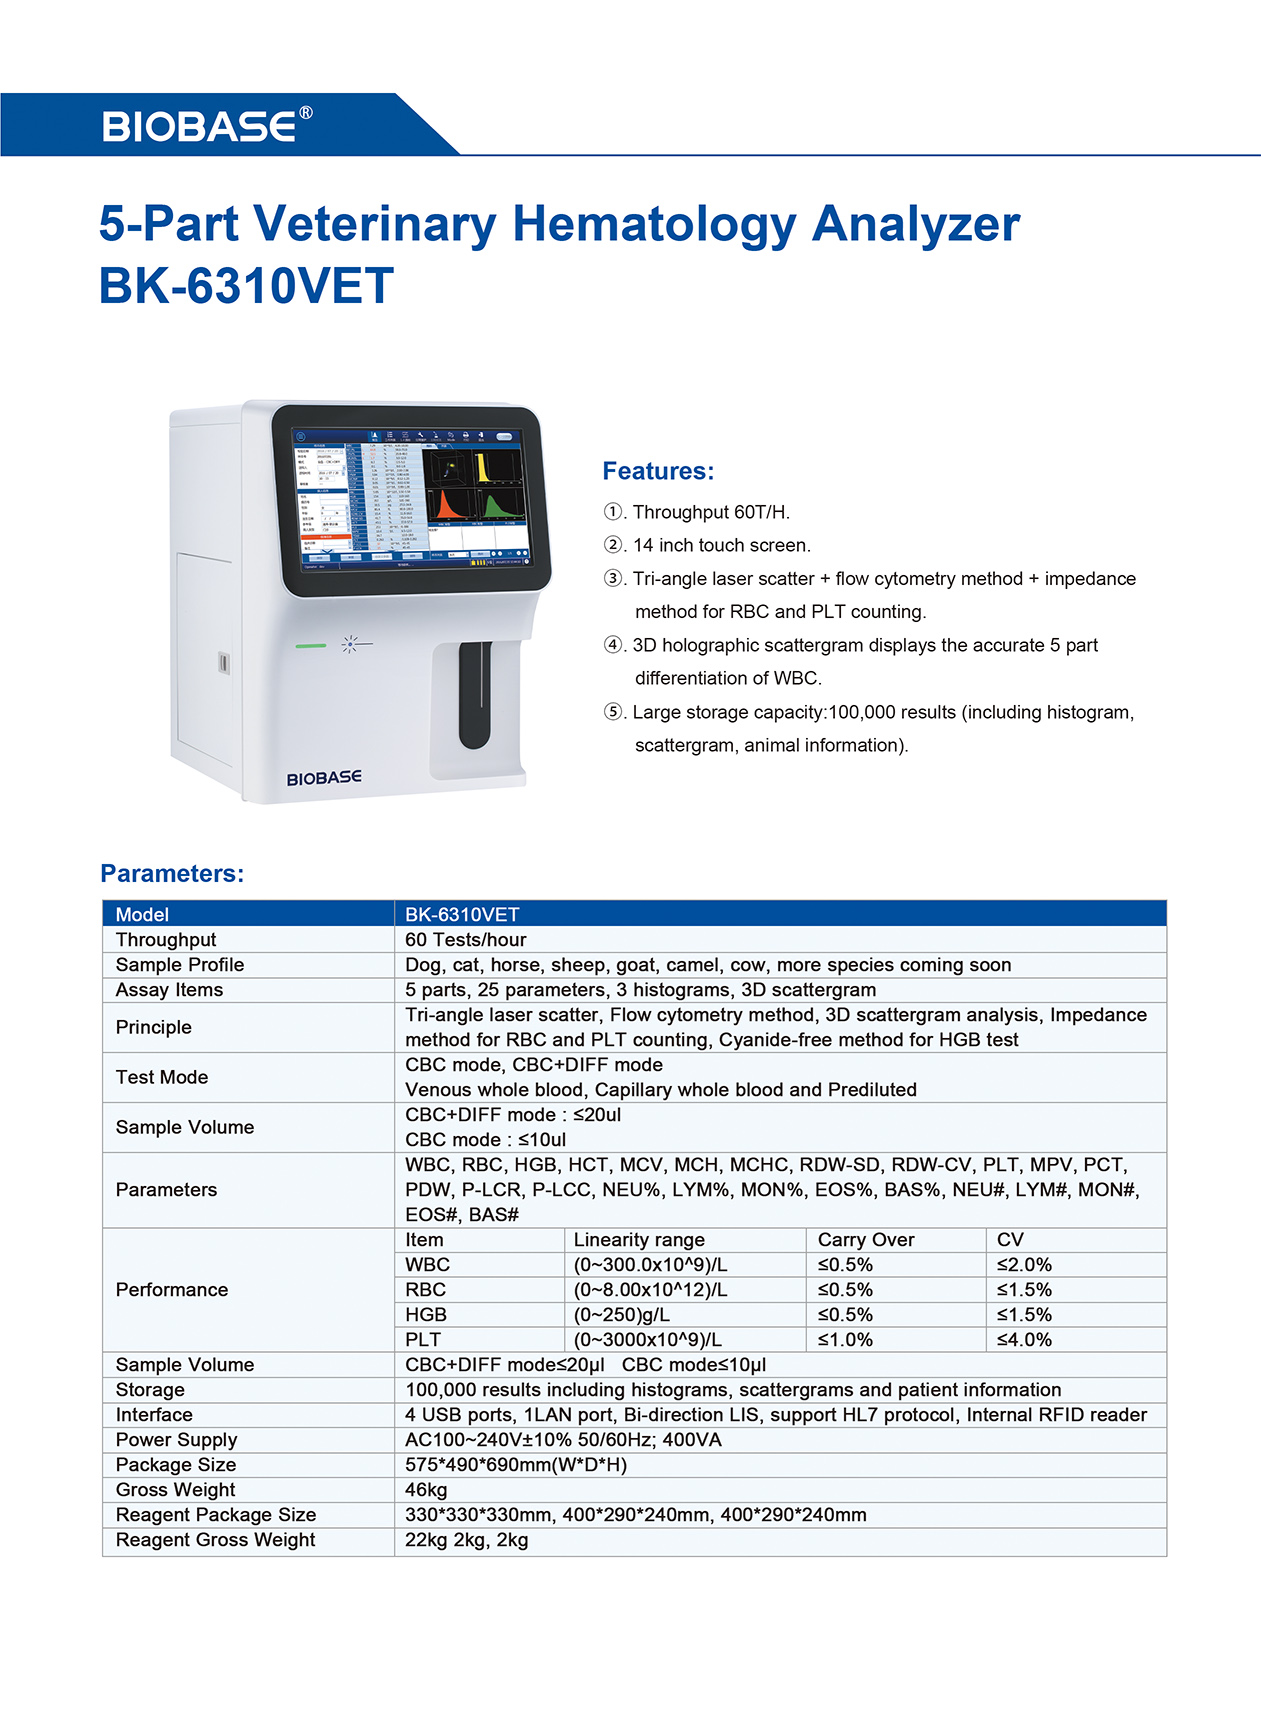 5-Part Veterinary Hematology Analyzer BK-6310VET